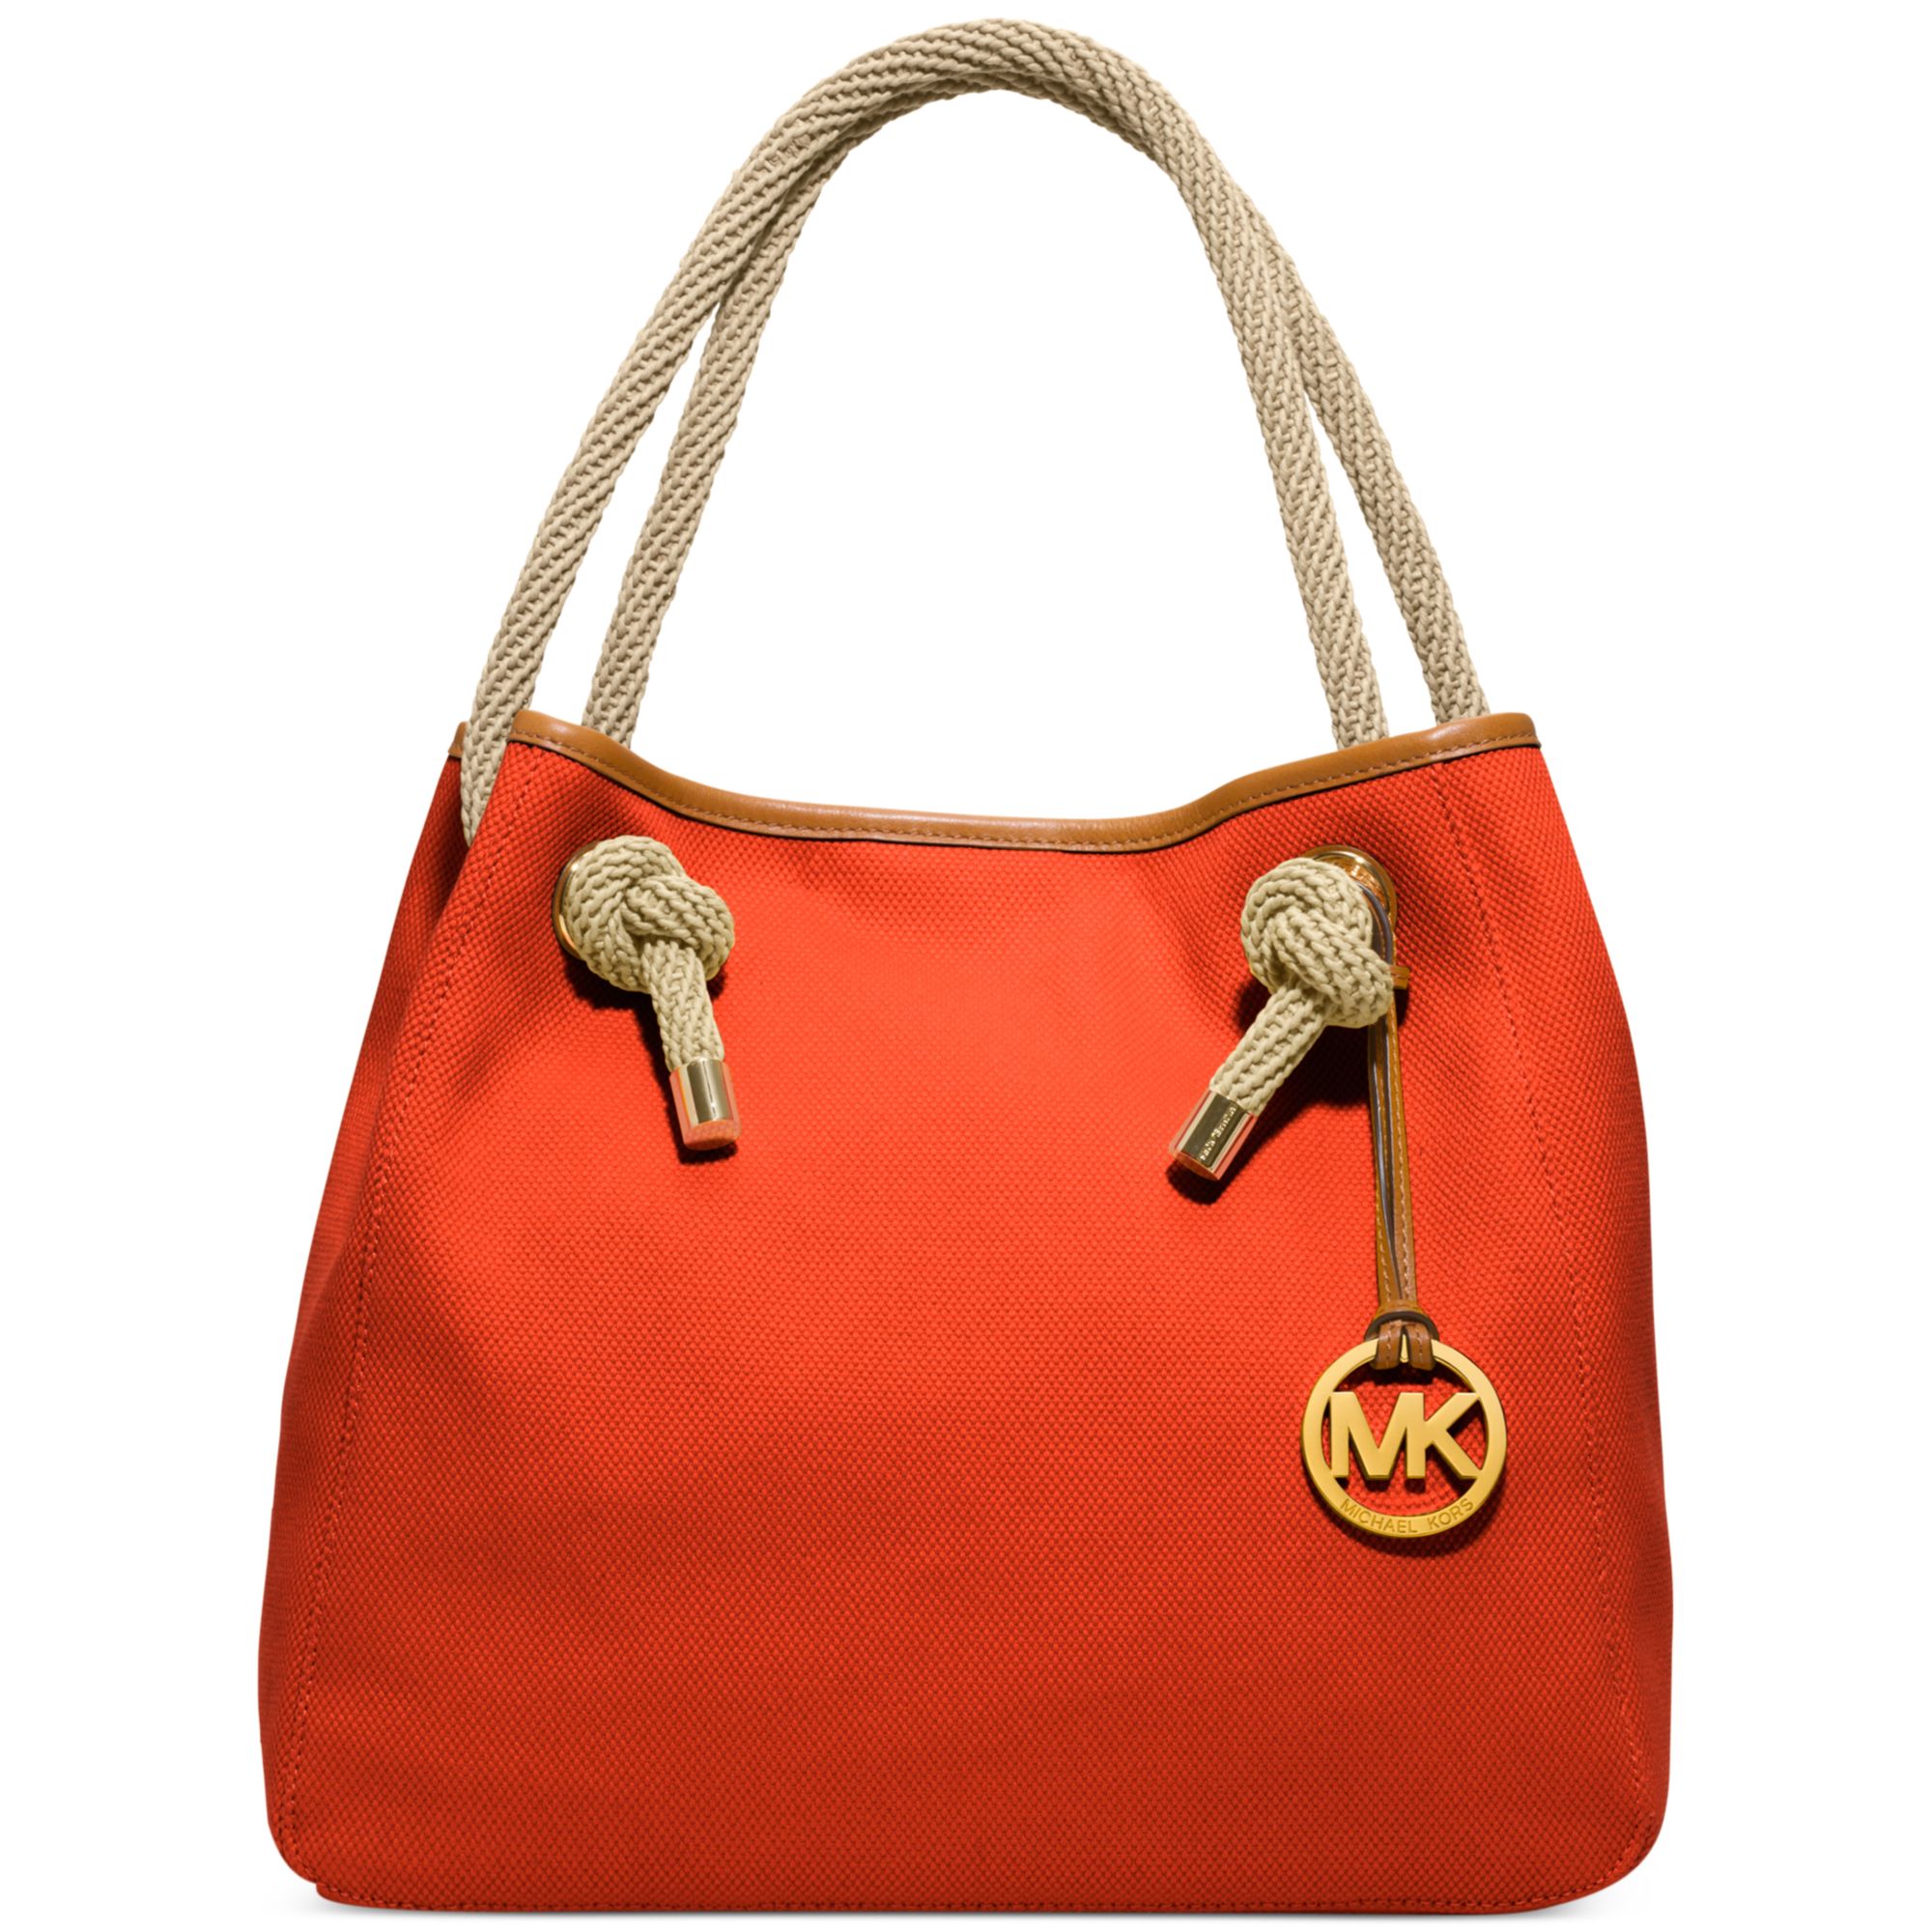 Michael Kors Marina Large Grab Bag in Orange (MANDARIN)